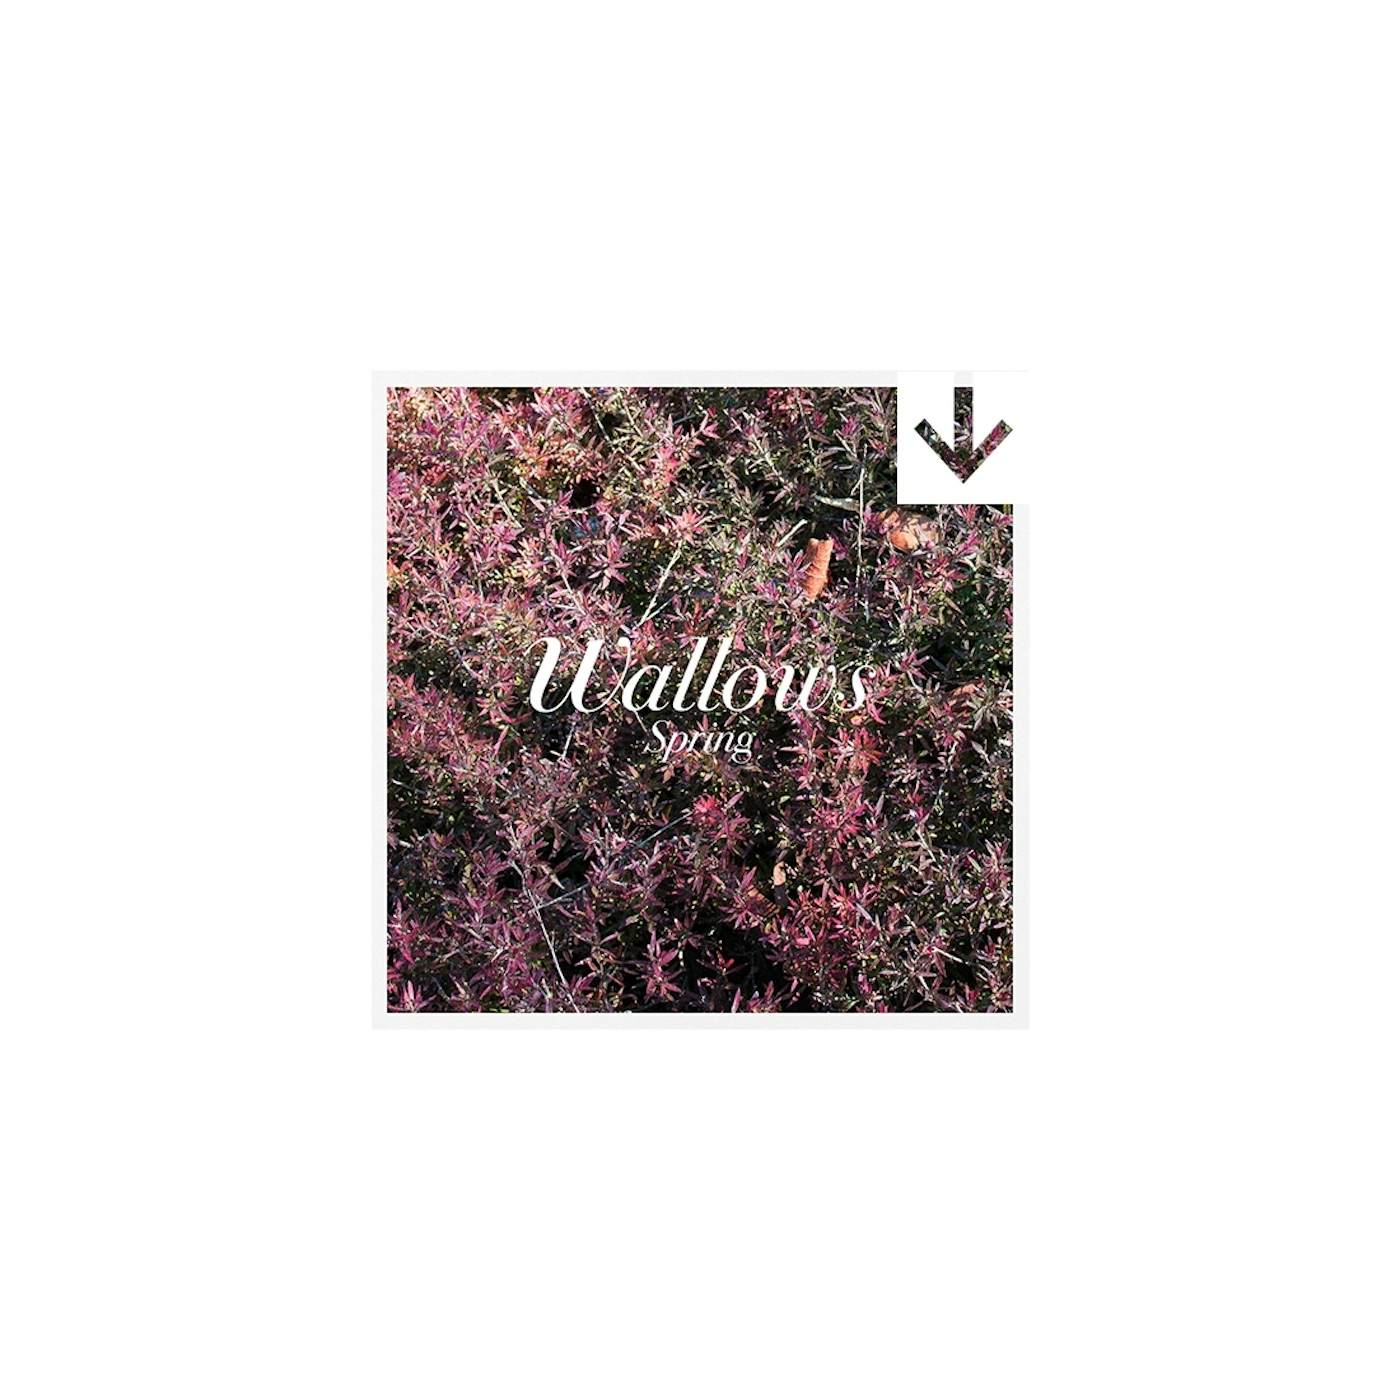 Wallows ‘spring’ EP (Digital Album)